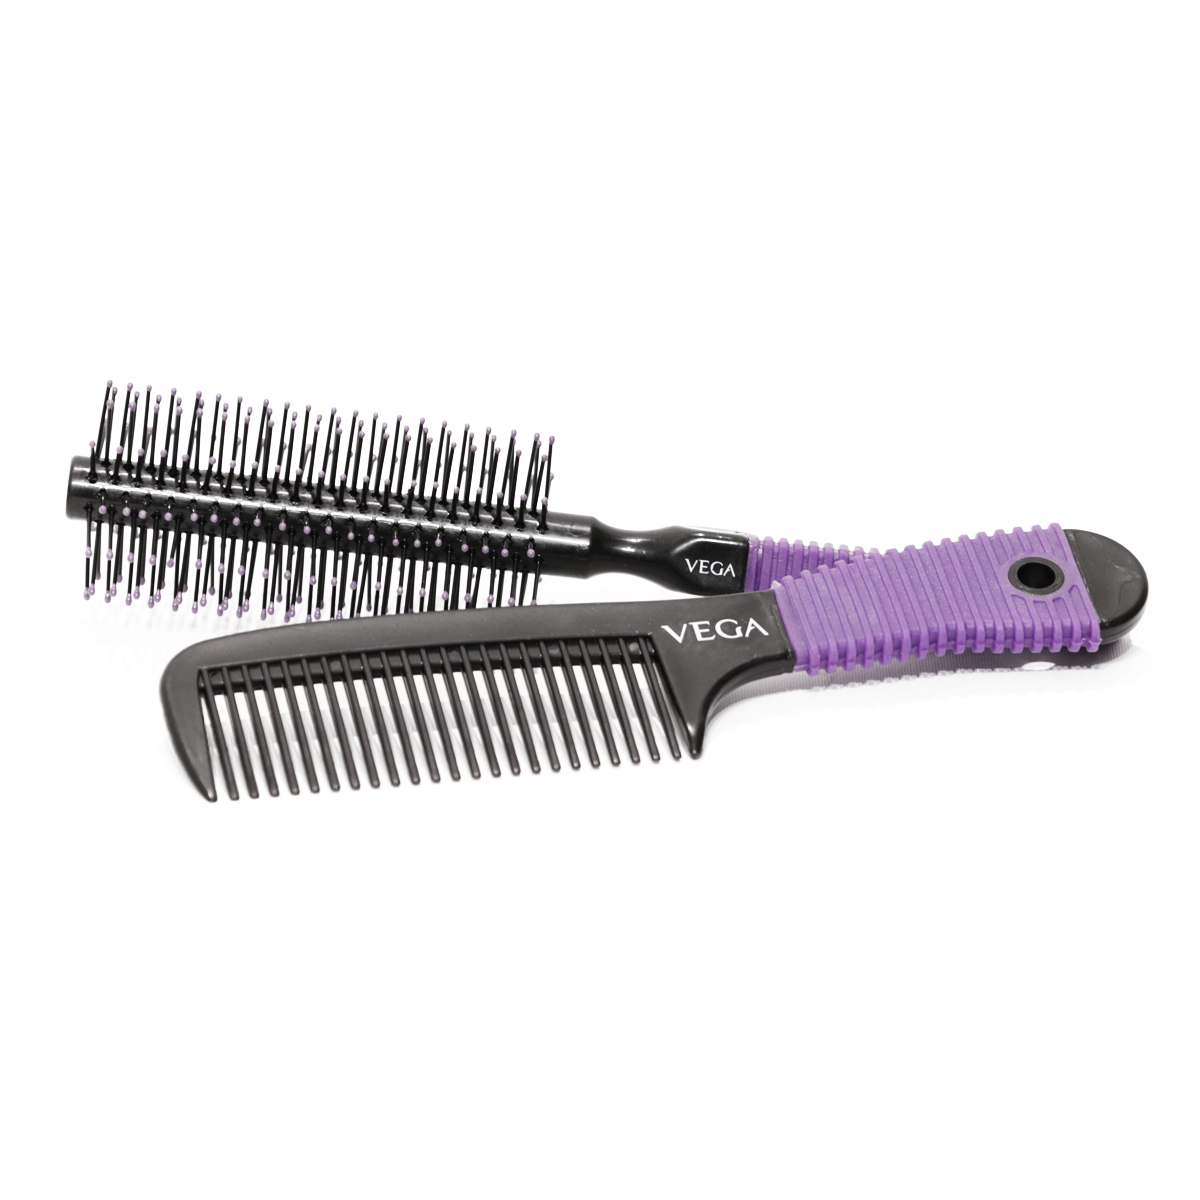 Buy Vega Hair Brush Set HBCS 01 Online - Lulu Hypermarket India